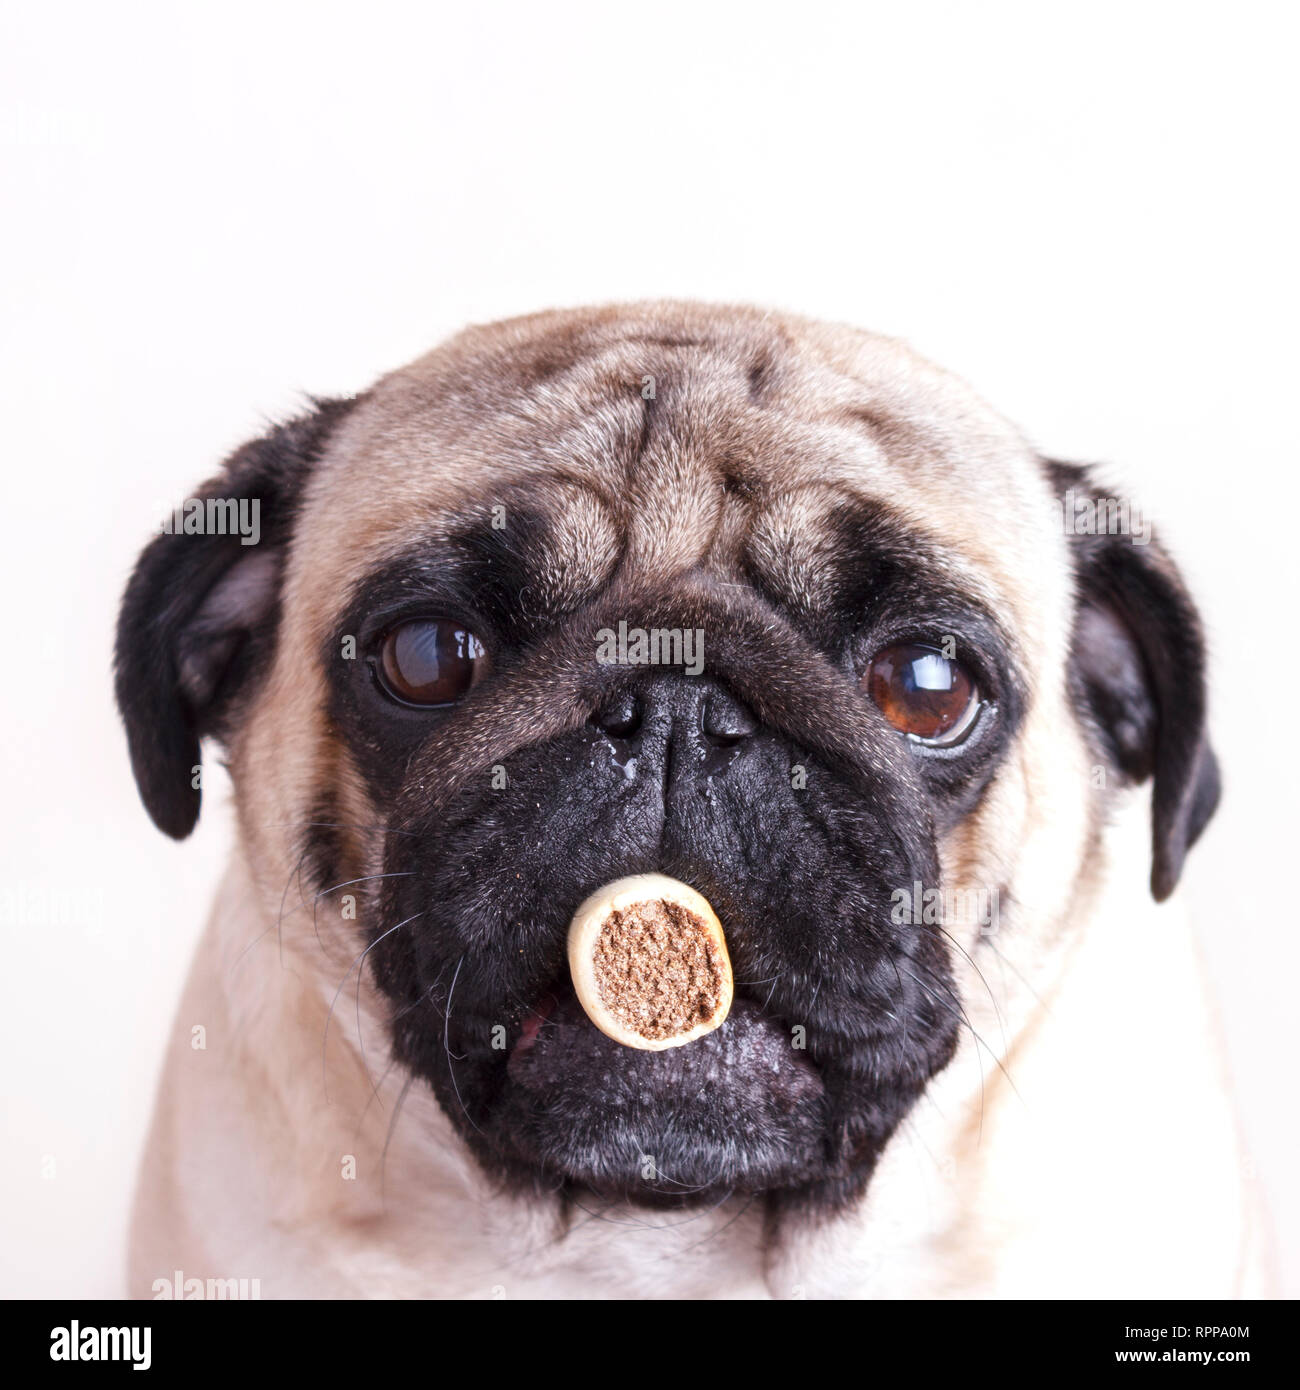 Hund Mops close-up mit traurigen braunen Augen hält behandeln in ihren  Mund. Portrait auf weißem Hintergrund Stockfotografie - Alamy